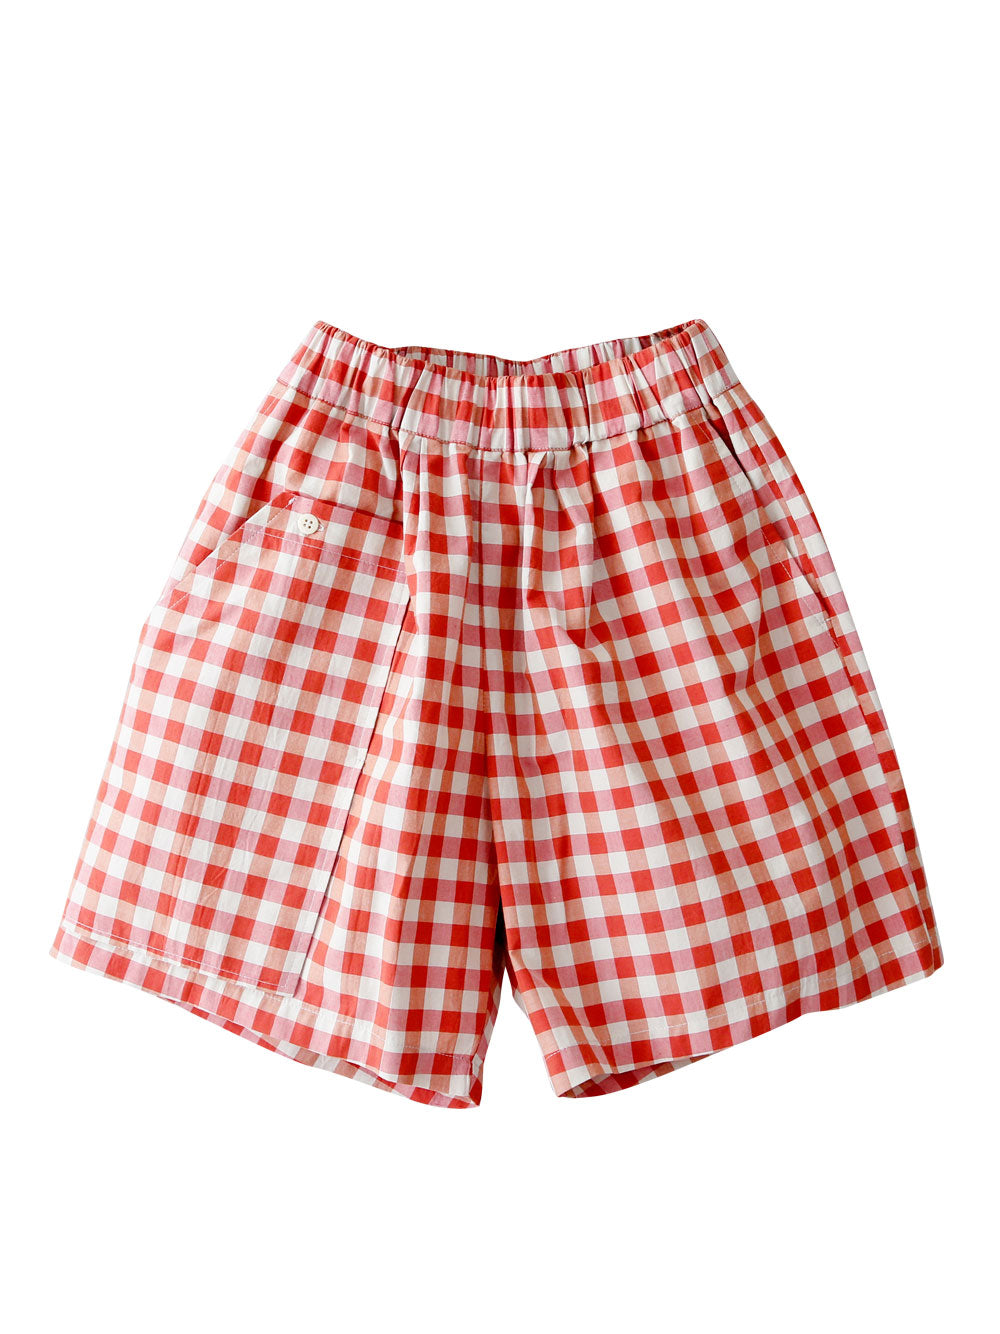 Three Pocket Red Check Shorts